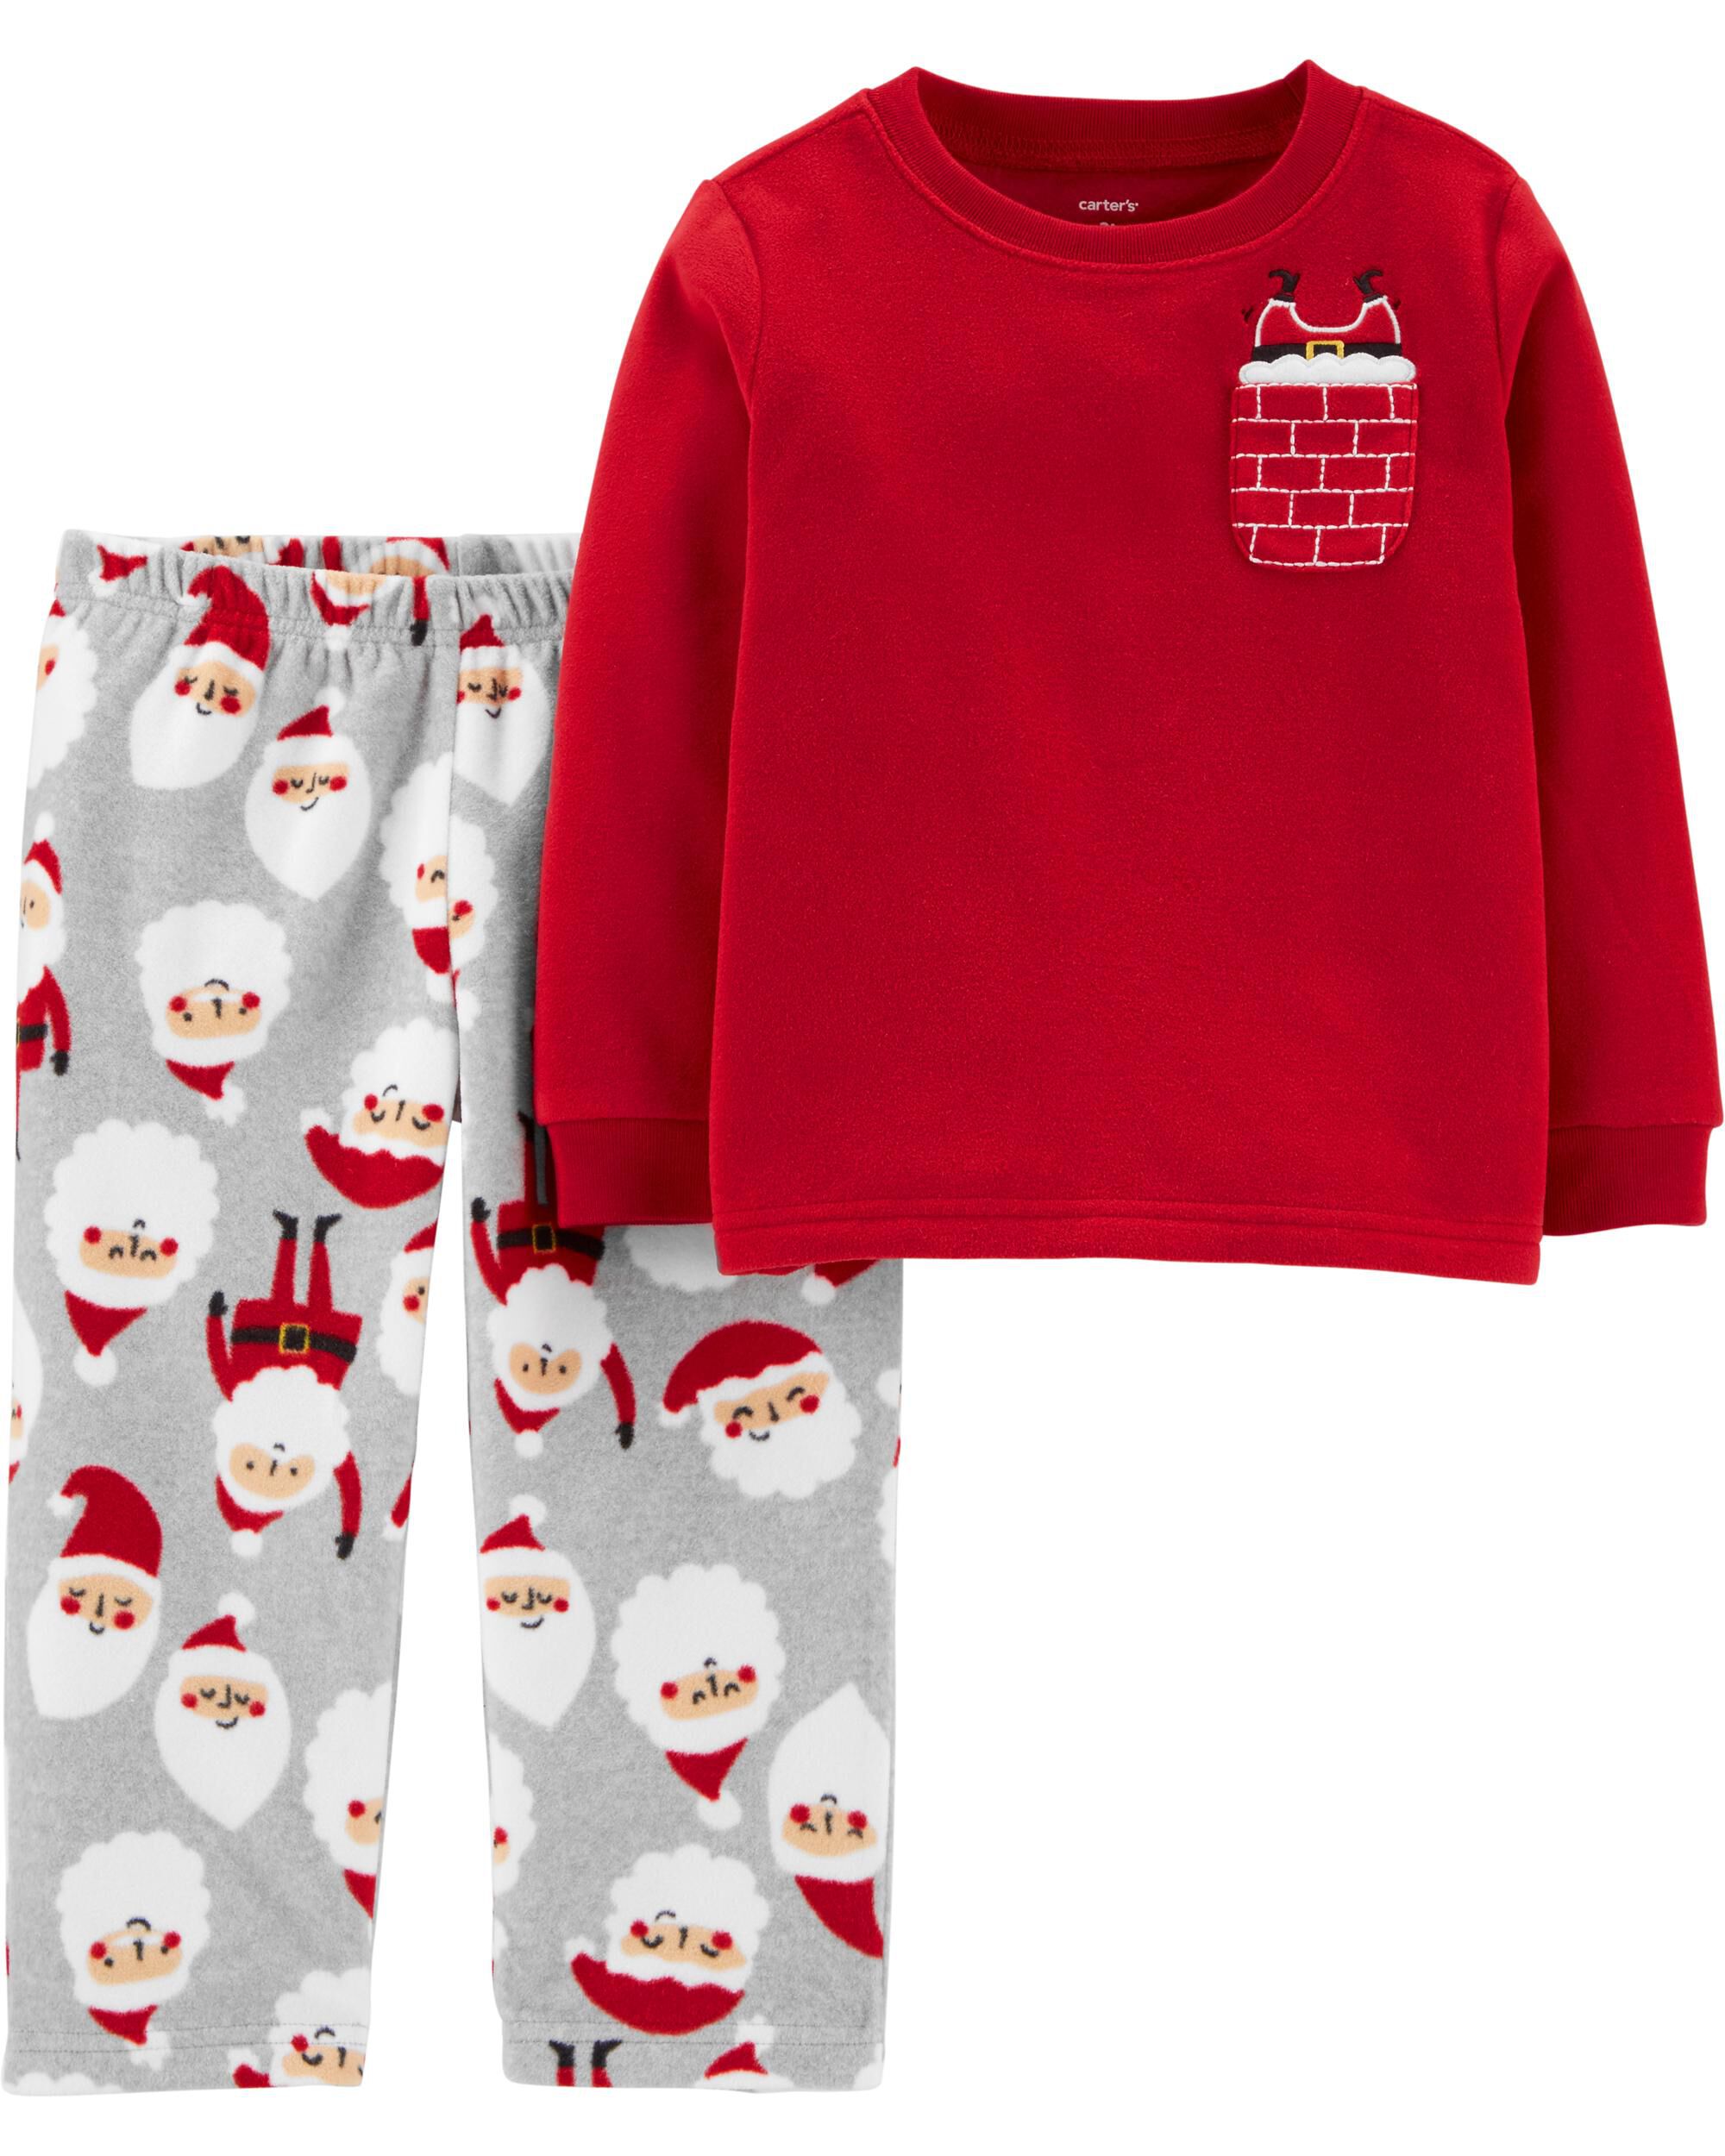 NWT Girls Carter's Fleece Christmas Pajamas Size 3T 3 Christmas Santa Pjs NEW 